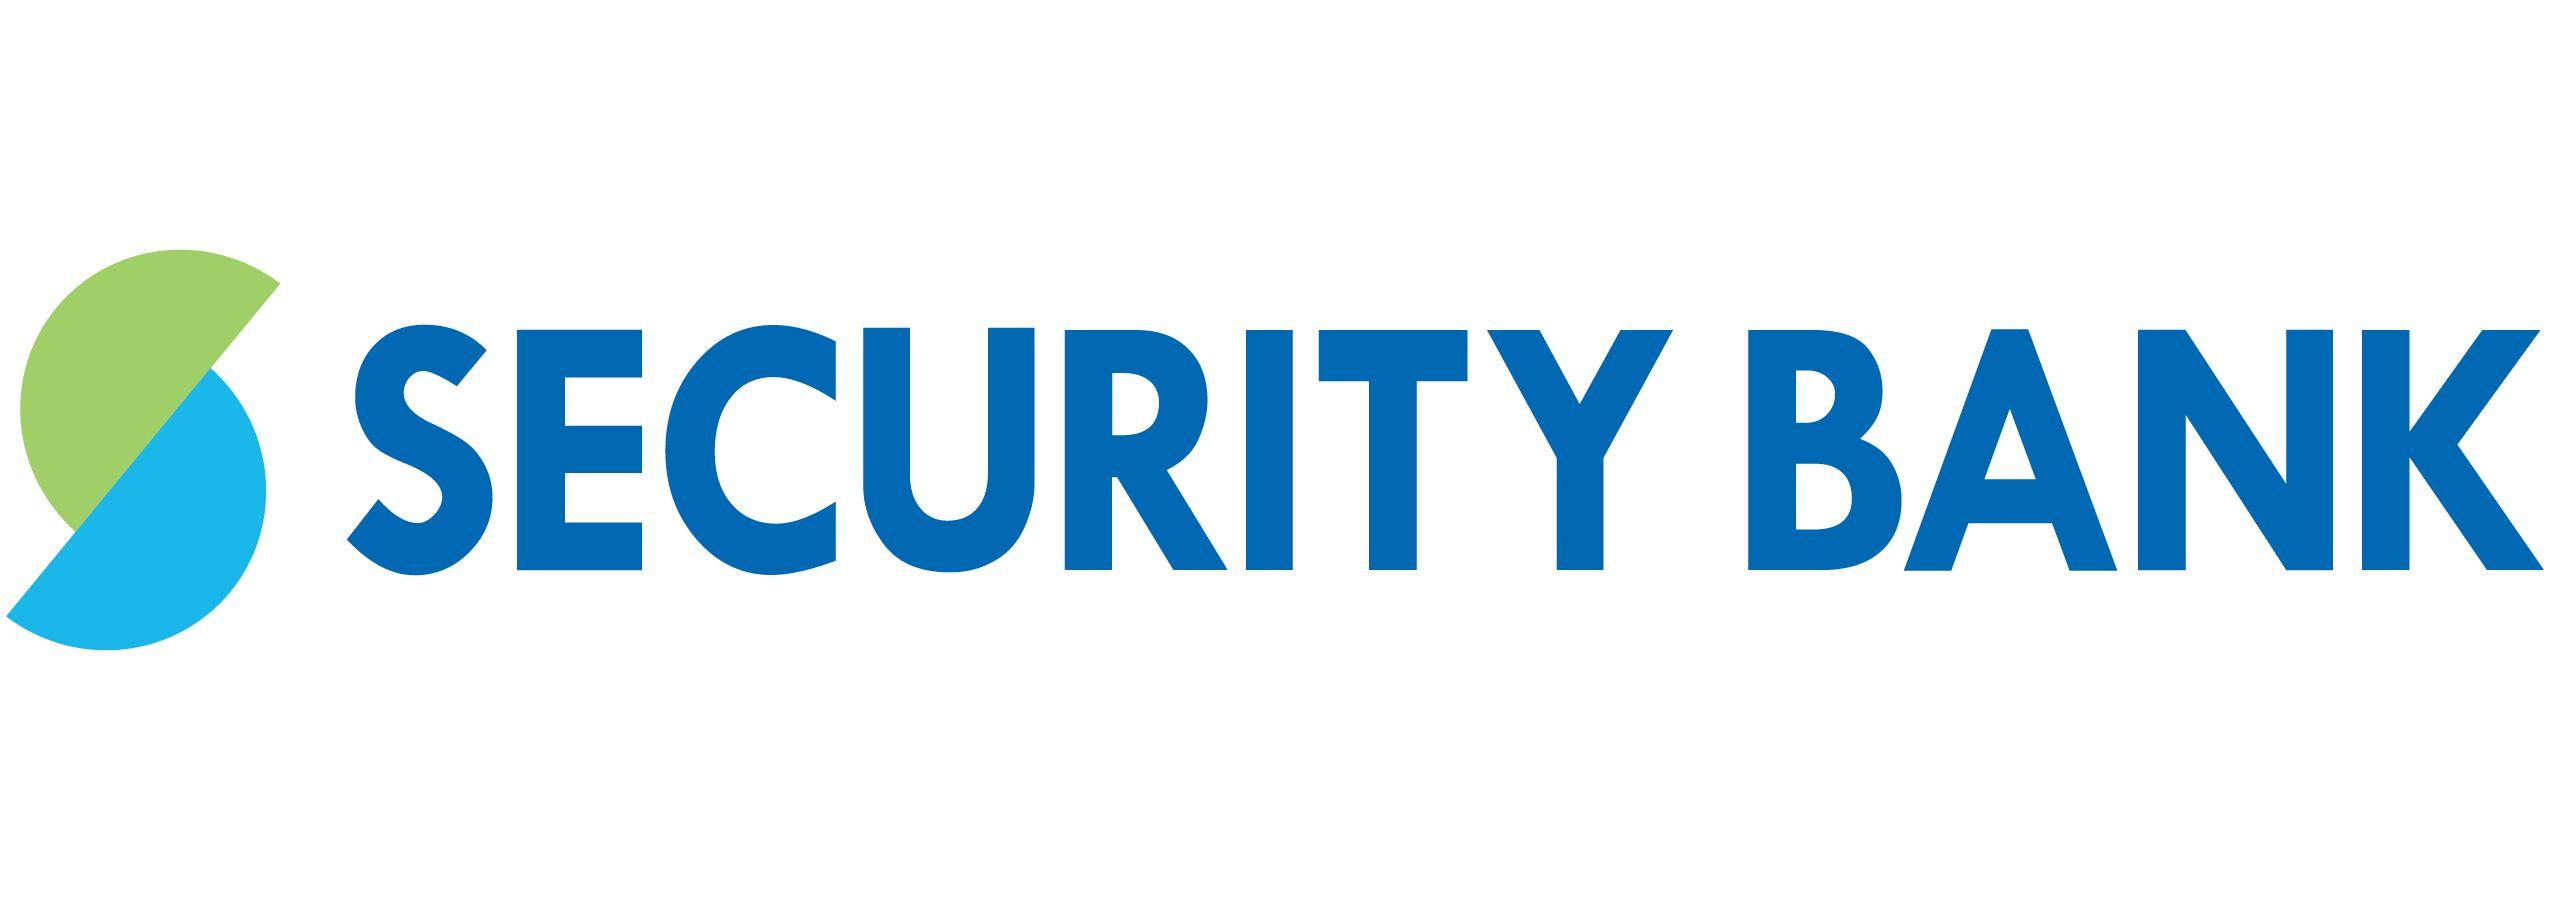 Bank Logo - The Security Bank Logo